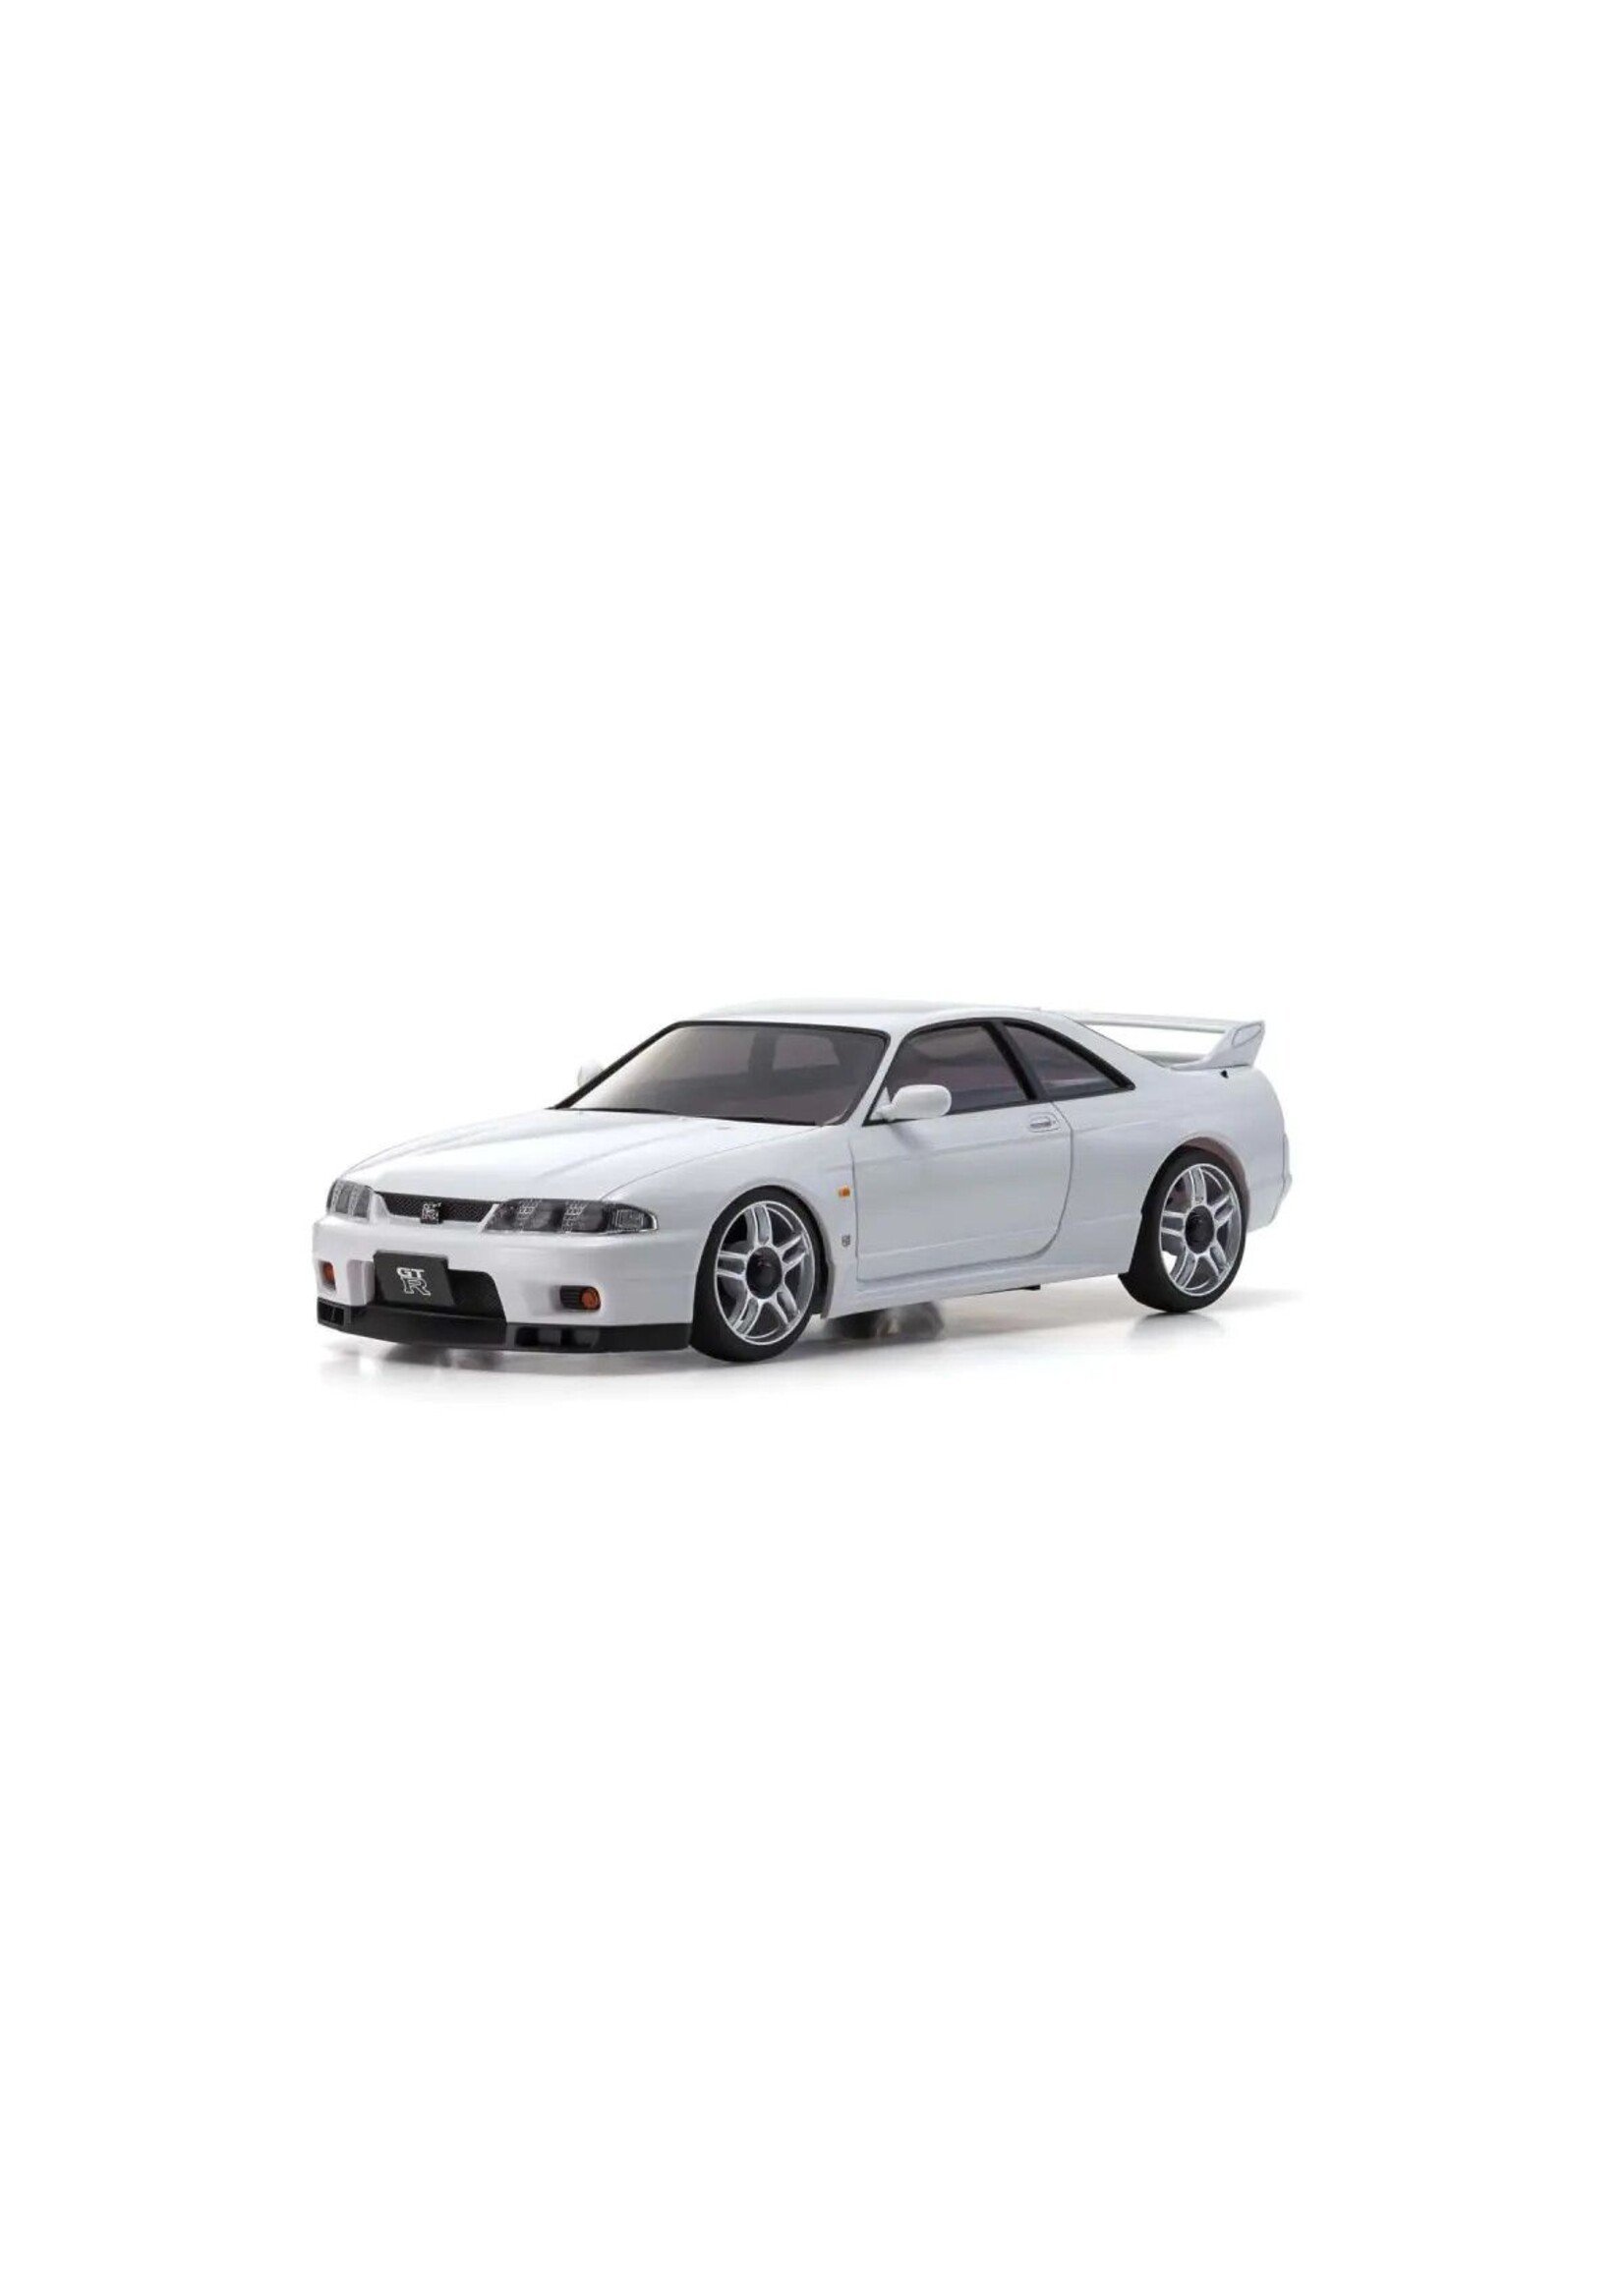 Kyosho MINI-Z AWD Skyline GT-R V.Spec, White - Readyset